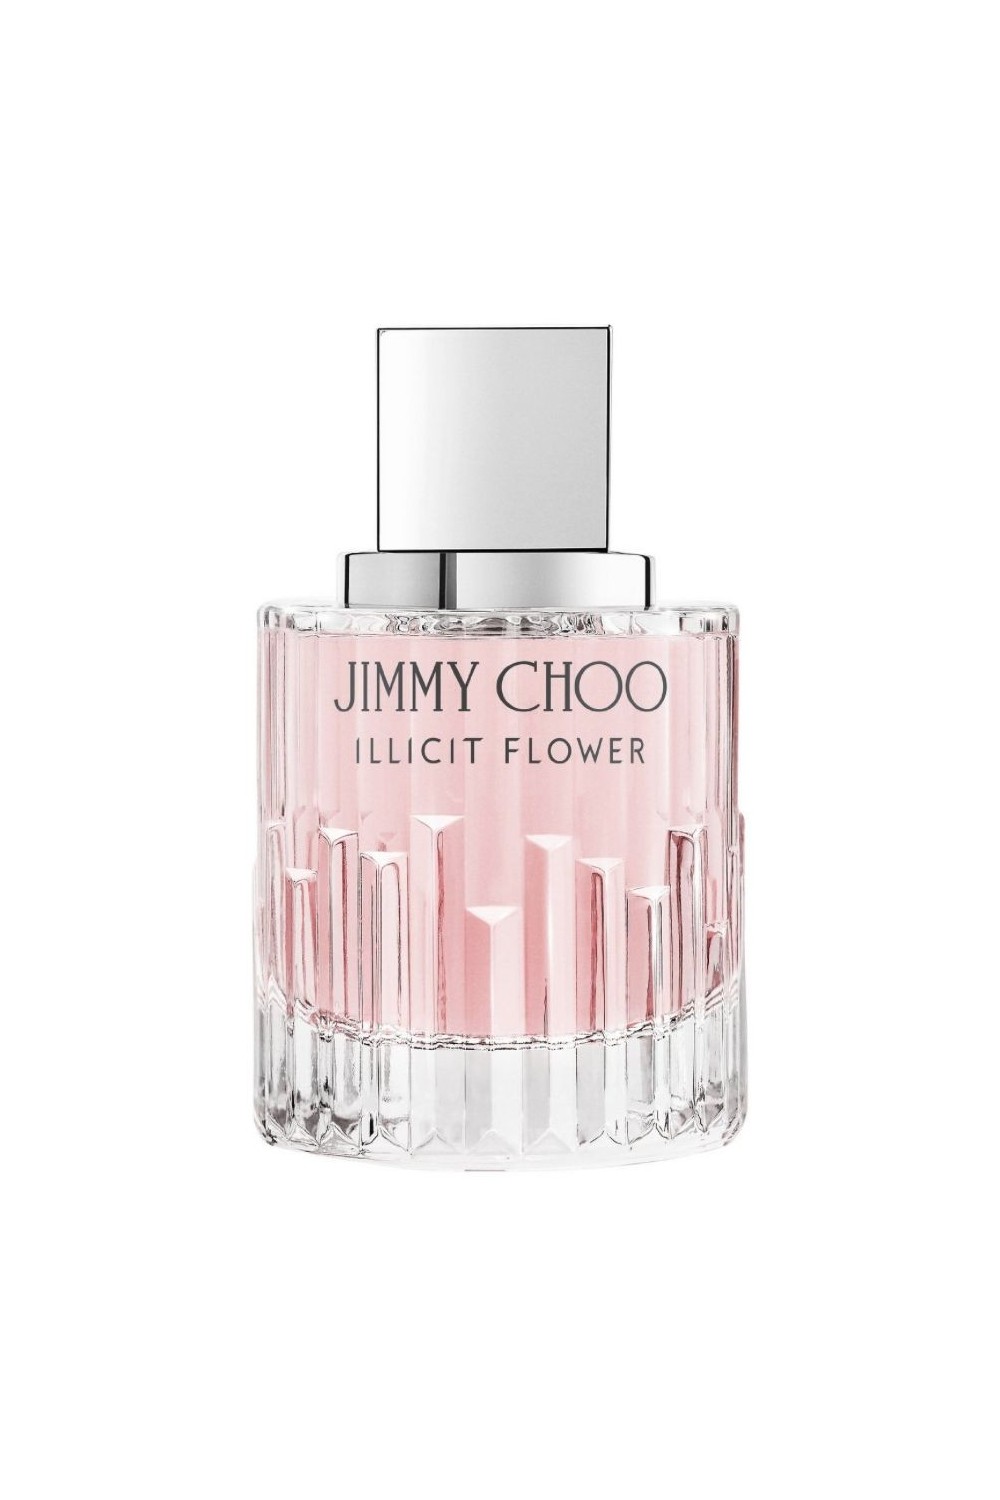 Jimmy Choo Illicit Flower Eau De Toilette Spray 60ml